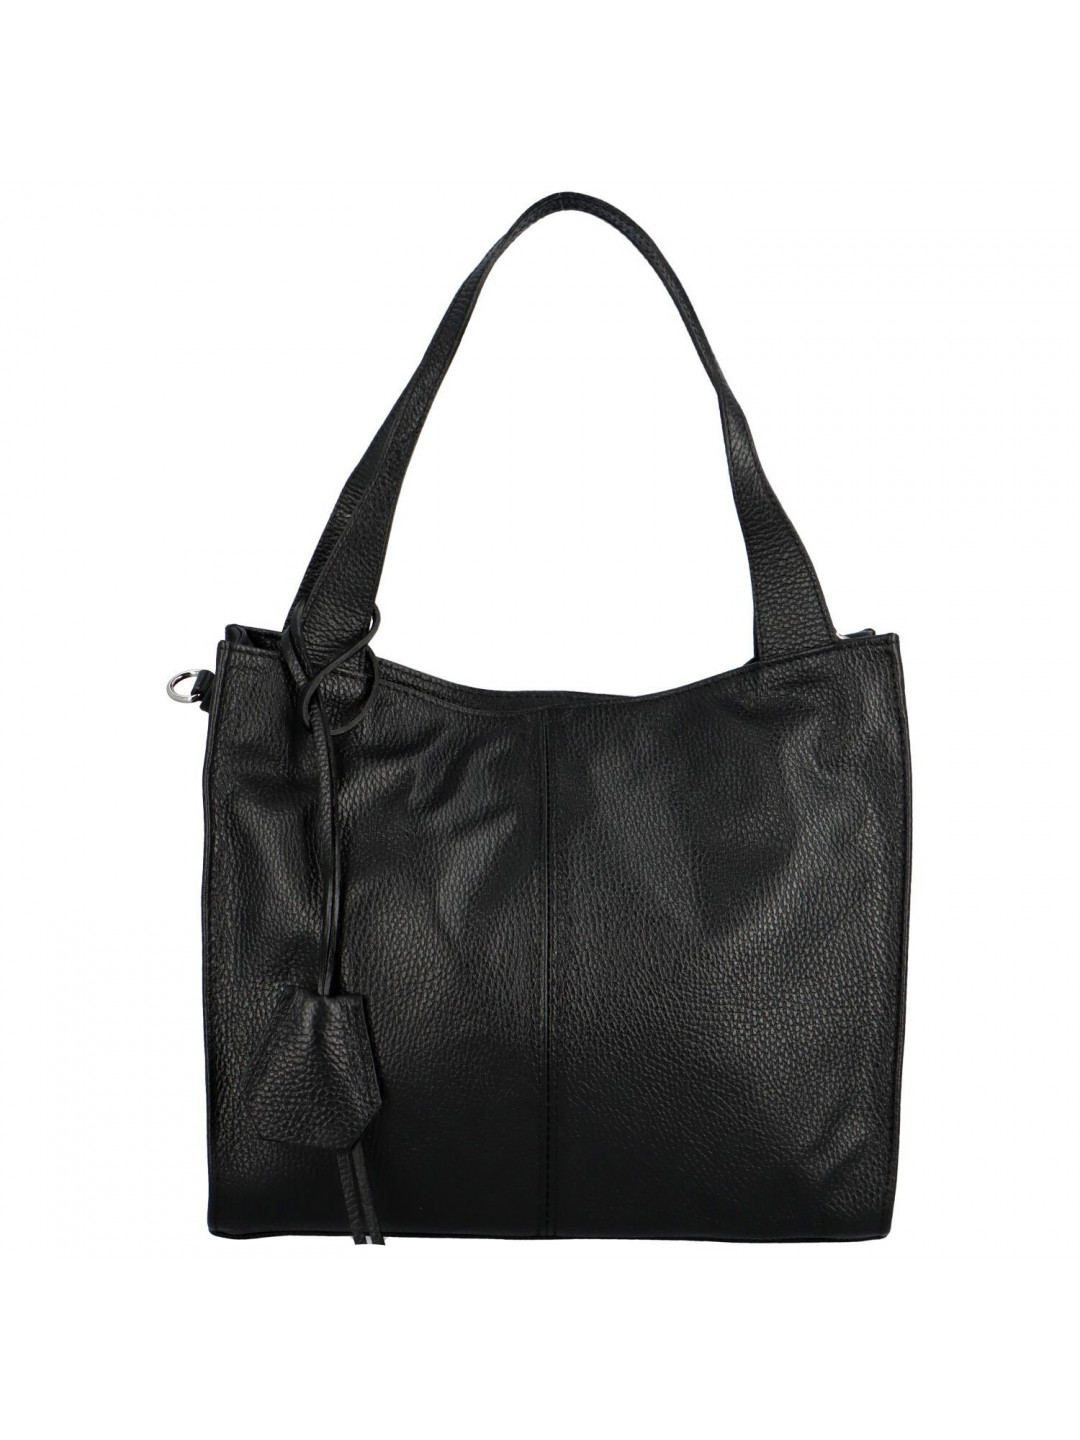 Praktická elegantní kožená kabelka Valeria černá